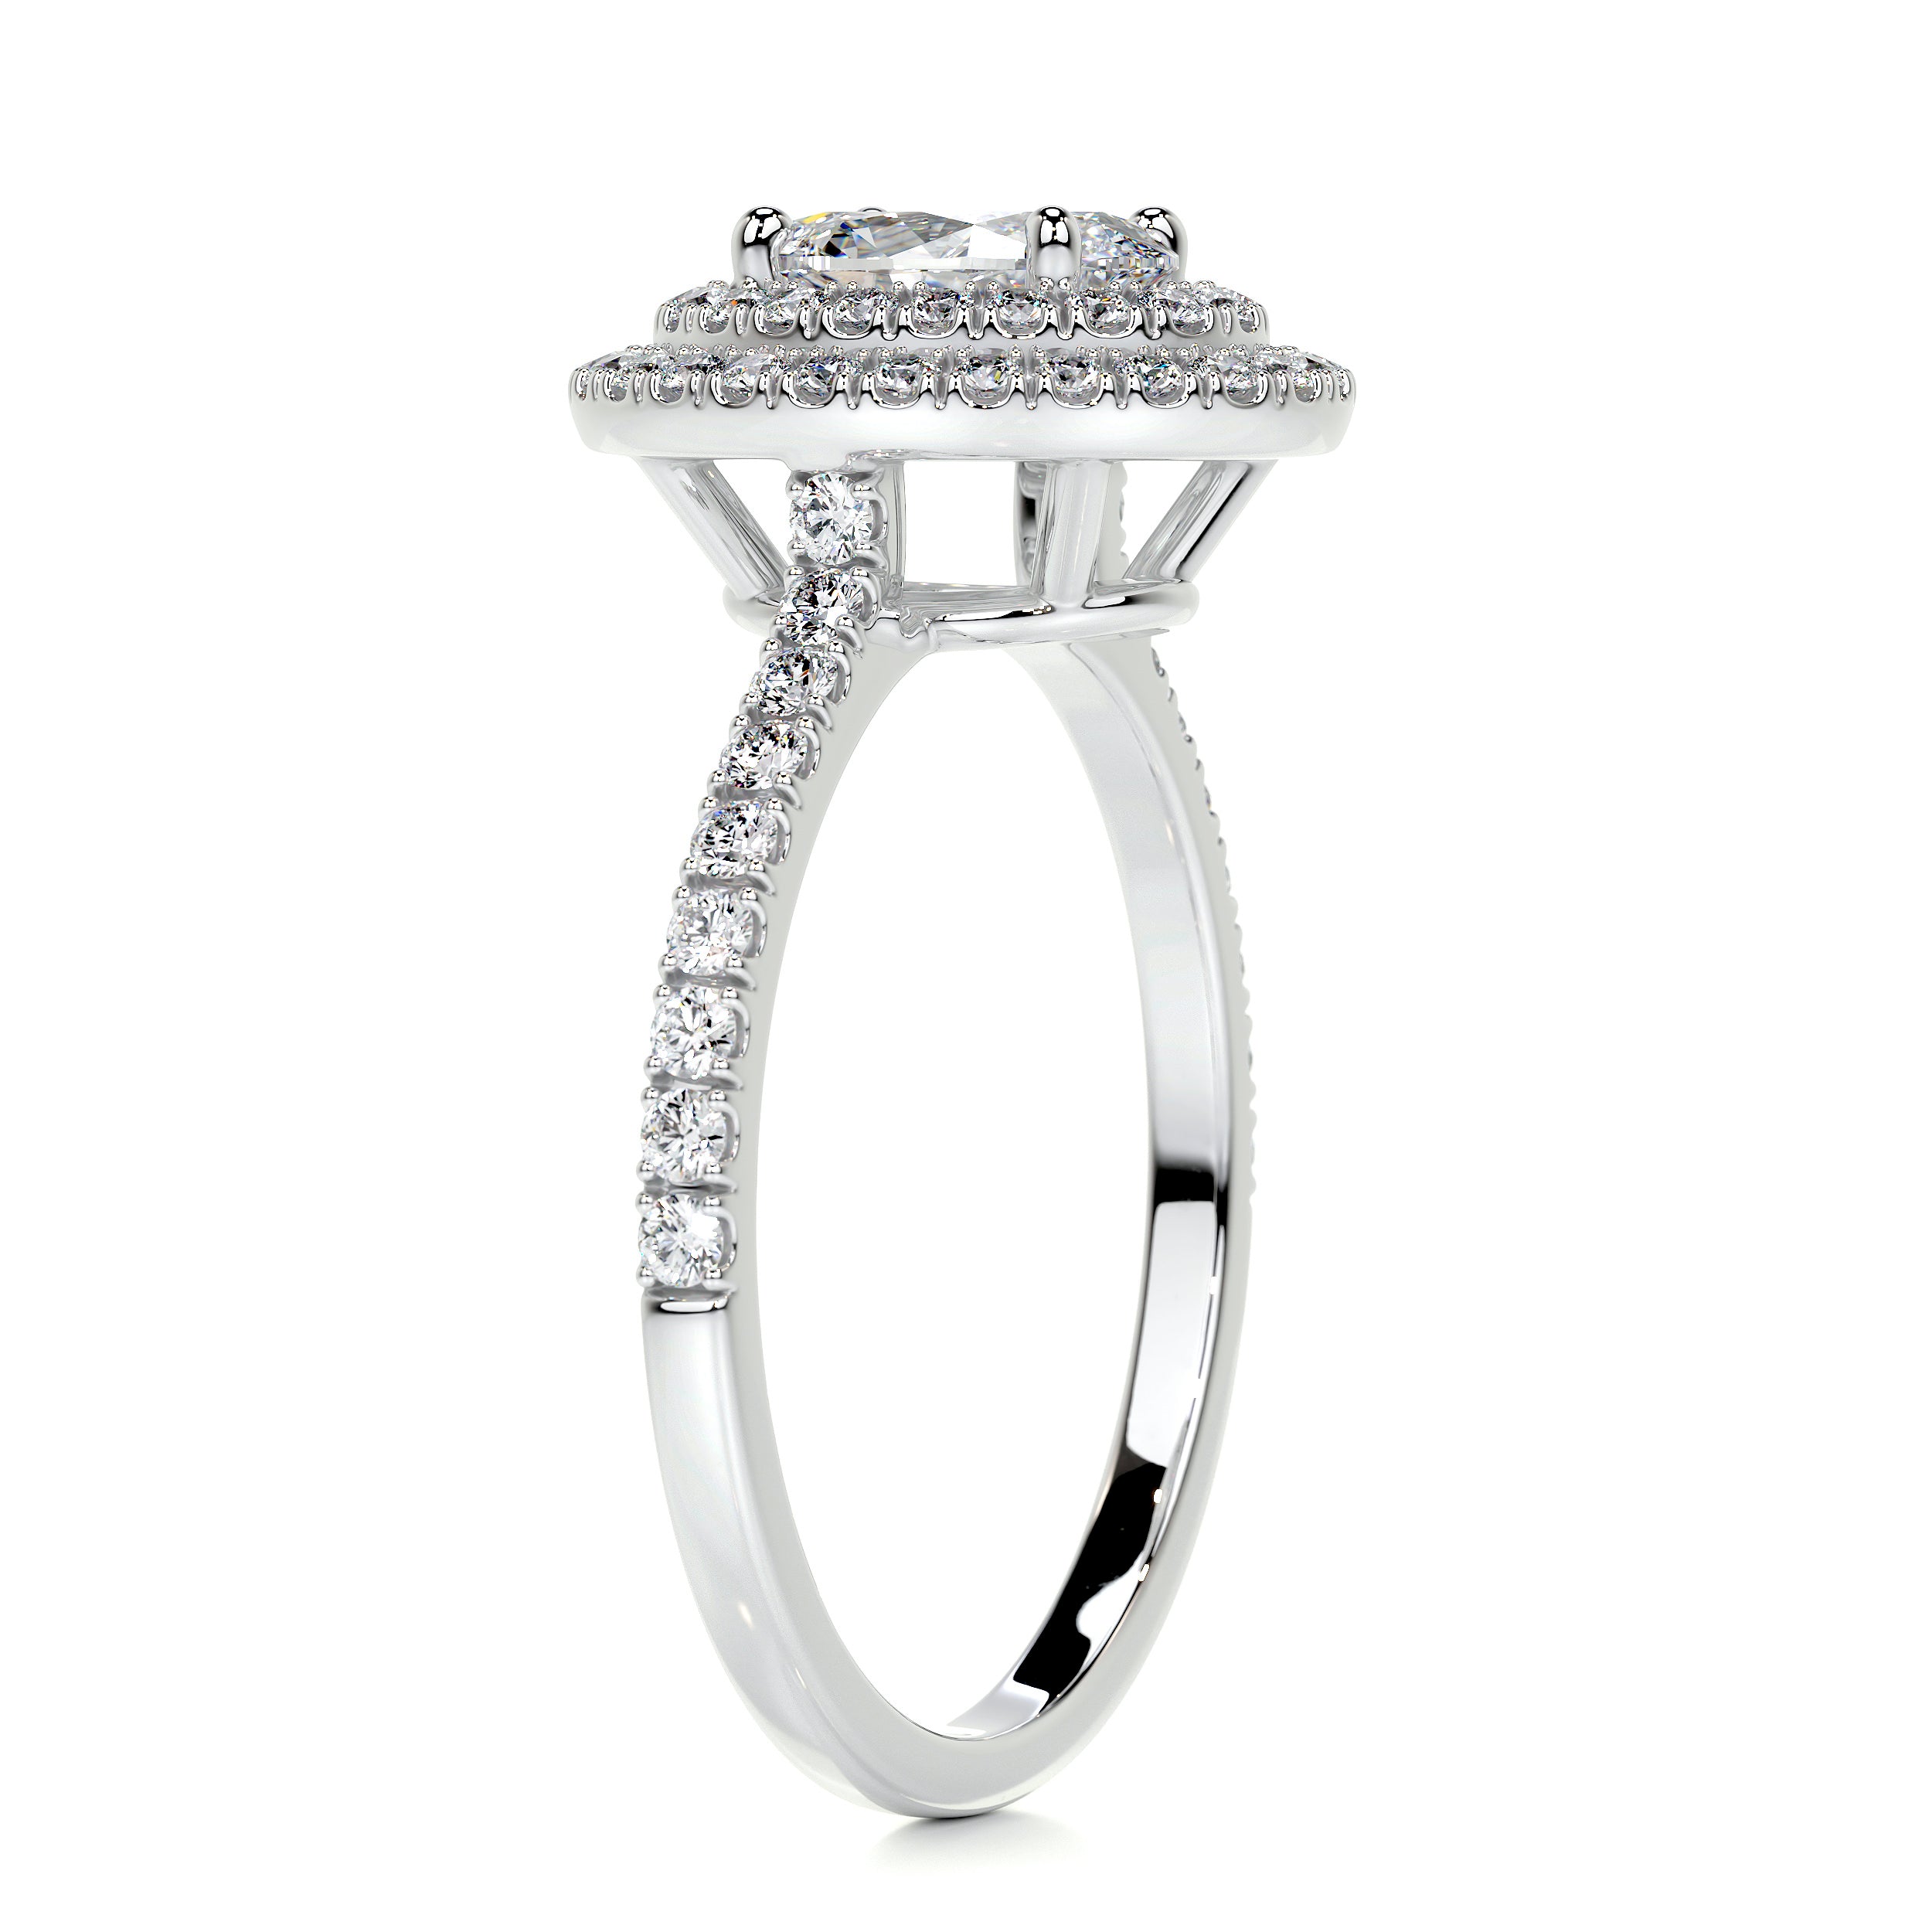 Nora Diamond Engagement Ring   (1.75 Carat) -14K White Gold